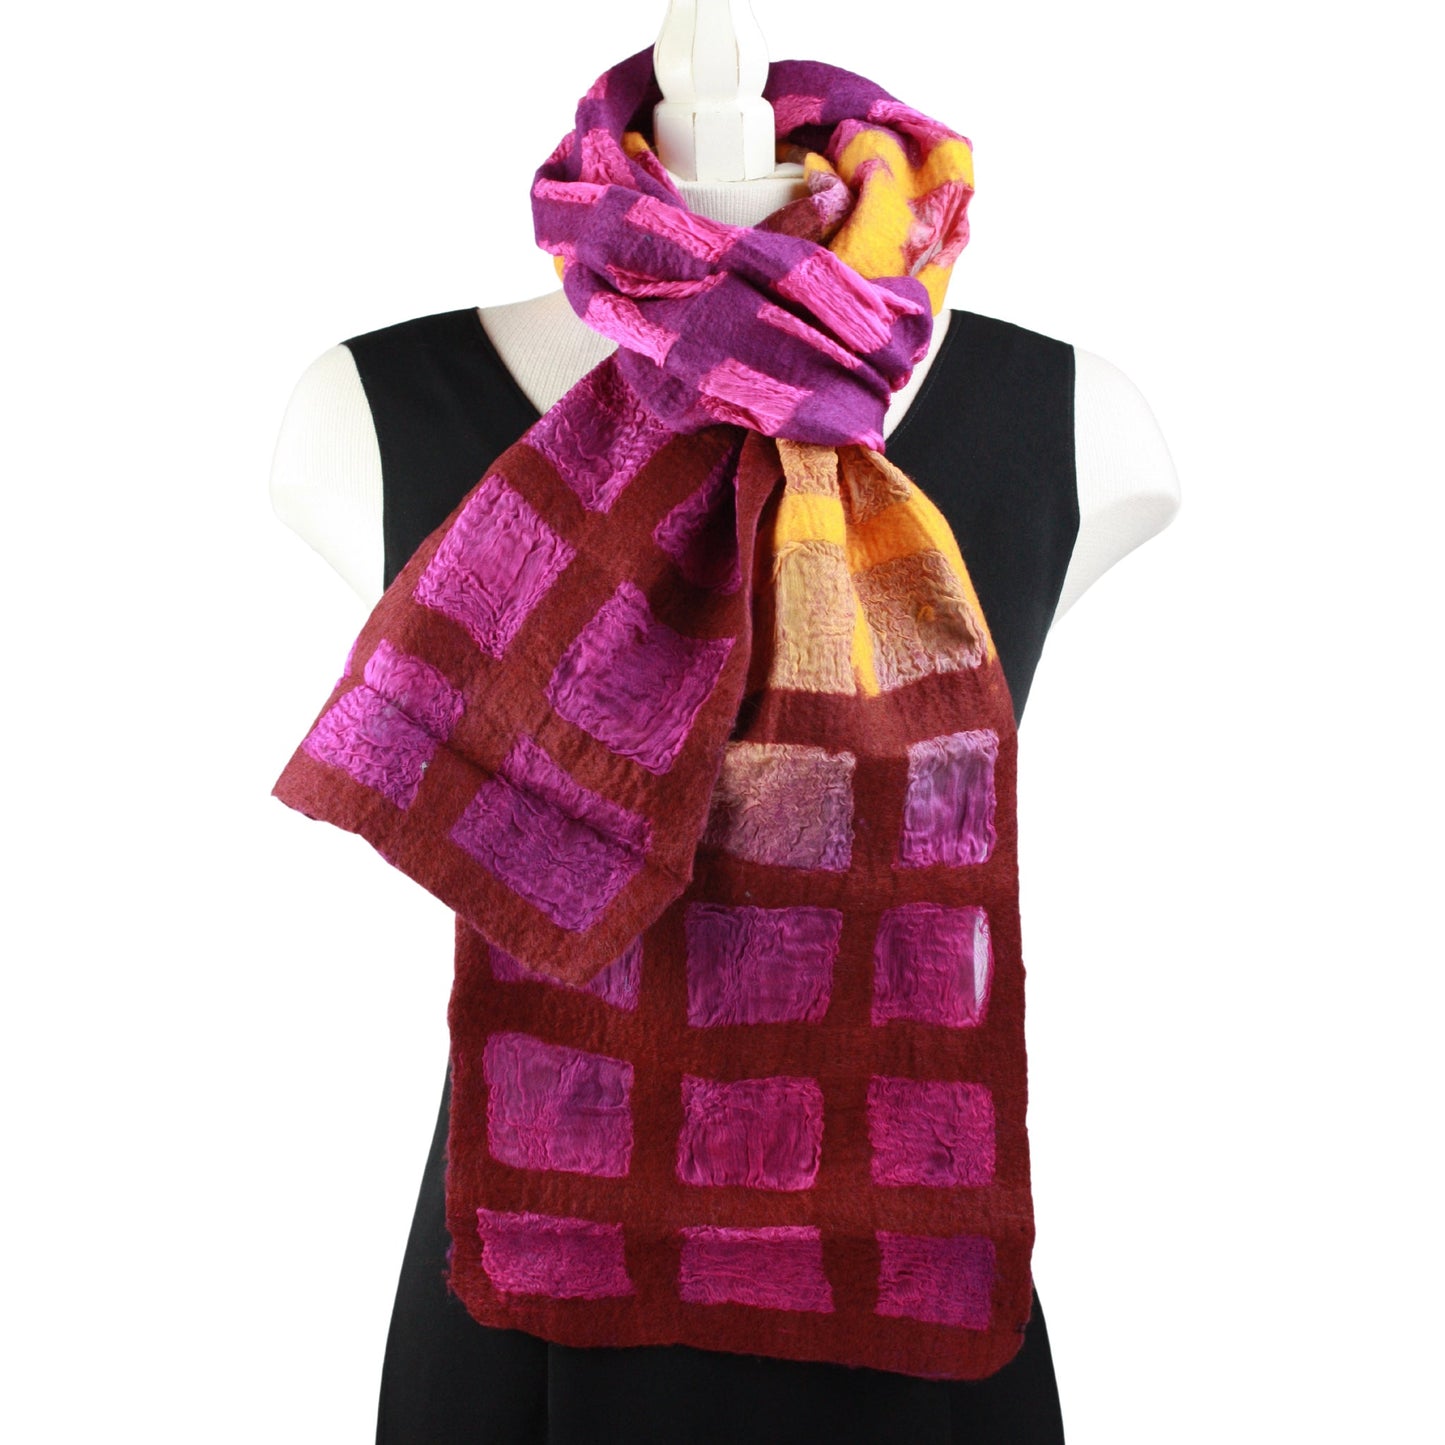 Windowpane scarf in warm tones